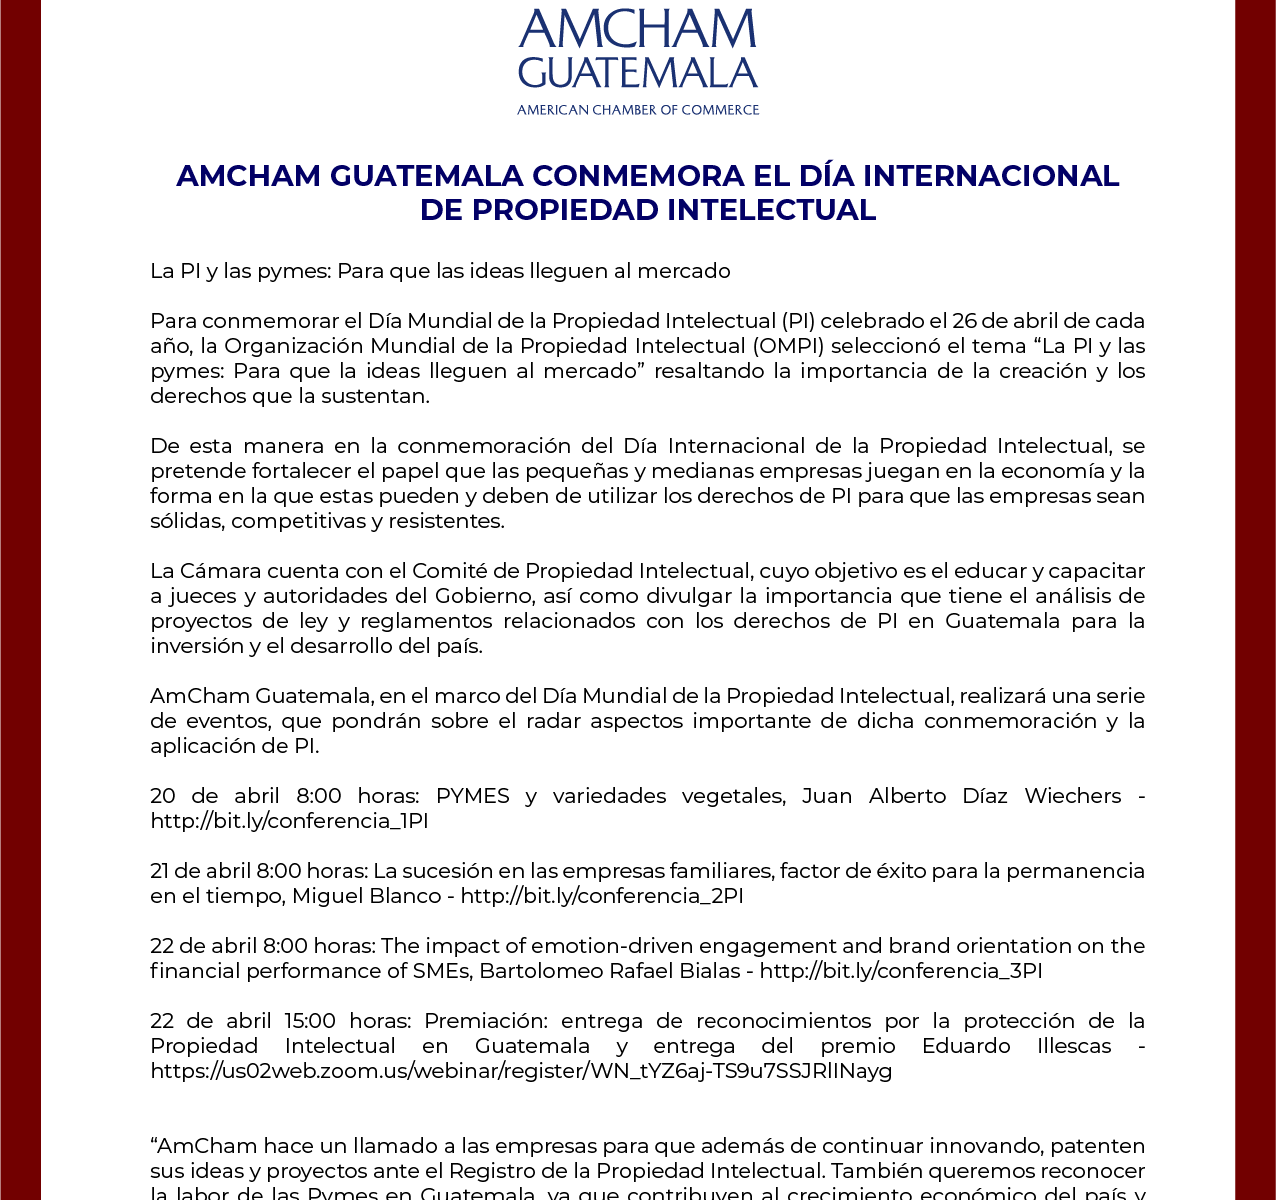 Comunicado AmCham Congreso apruebe Ley 51-74